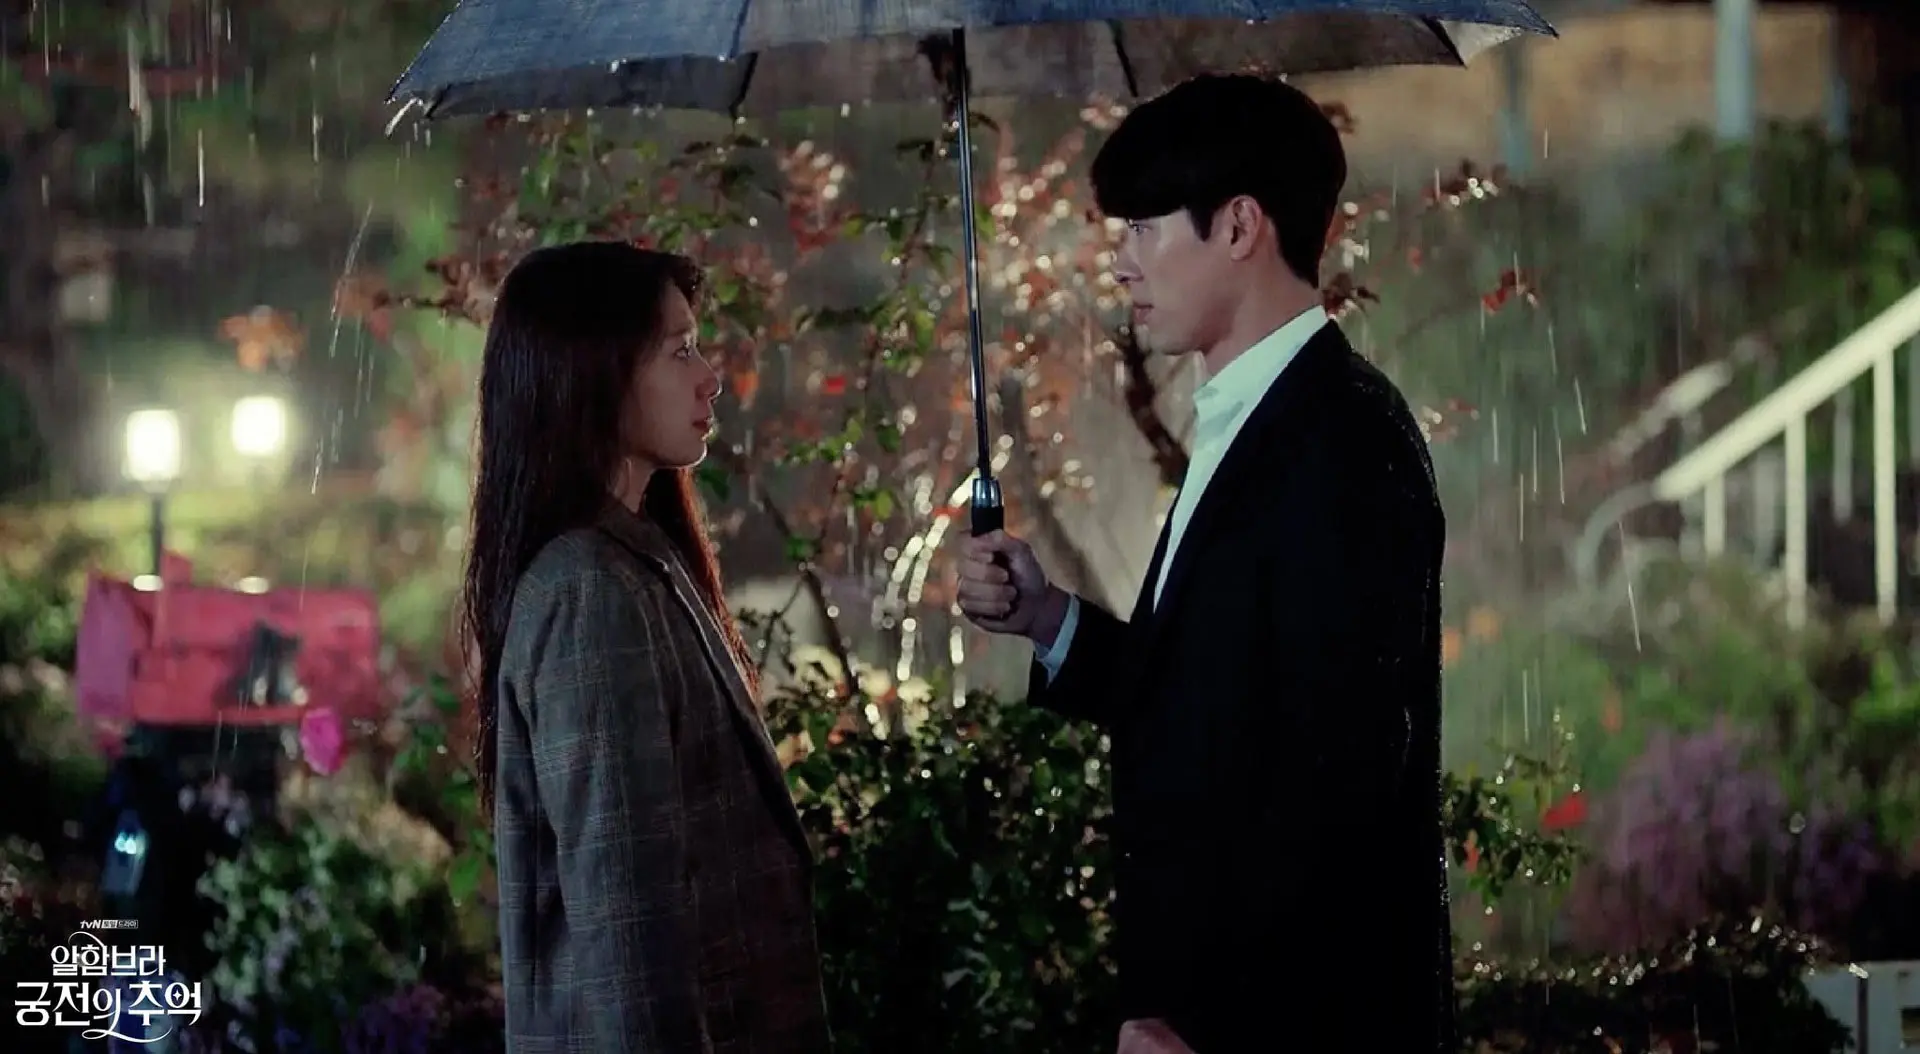 یک زن و مرد زیر چتر زیر باران در خاطرات الحمرا